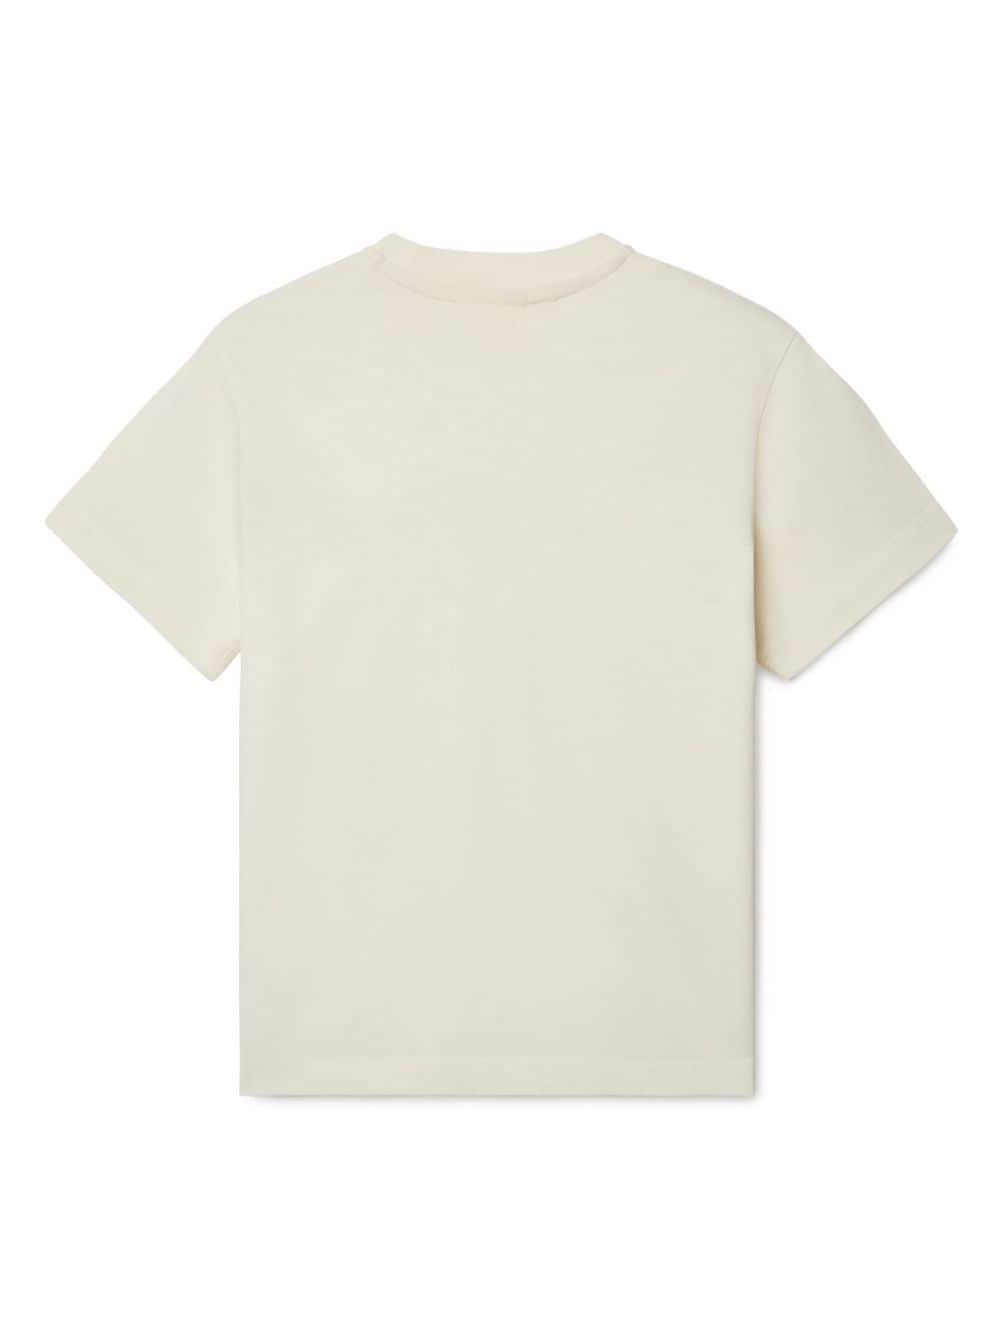 T-shirt per bambino in cotone bianco sporco